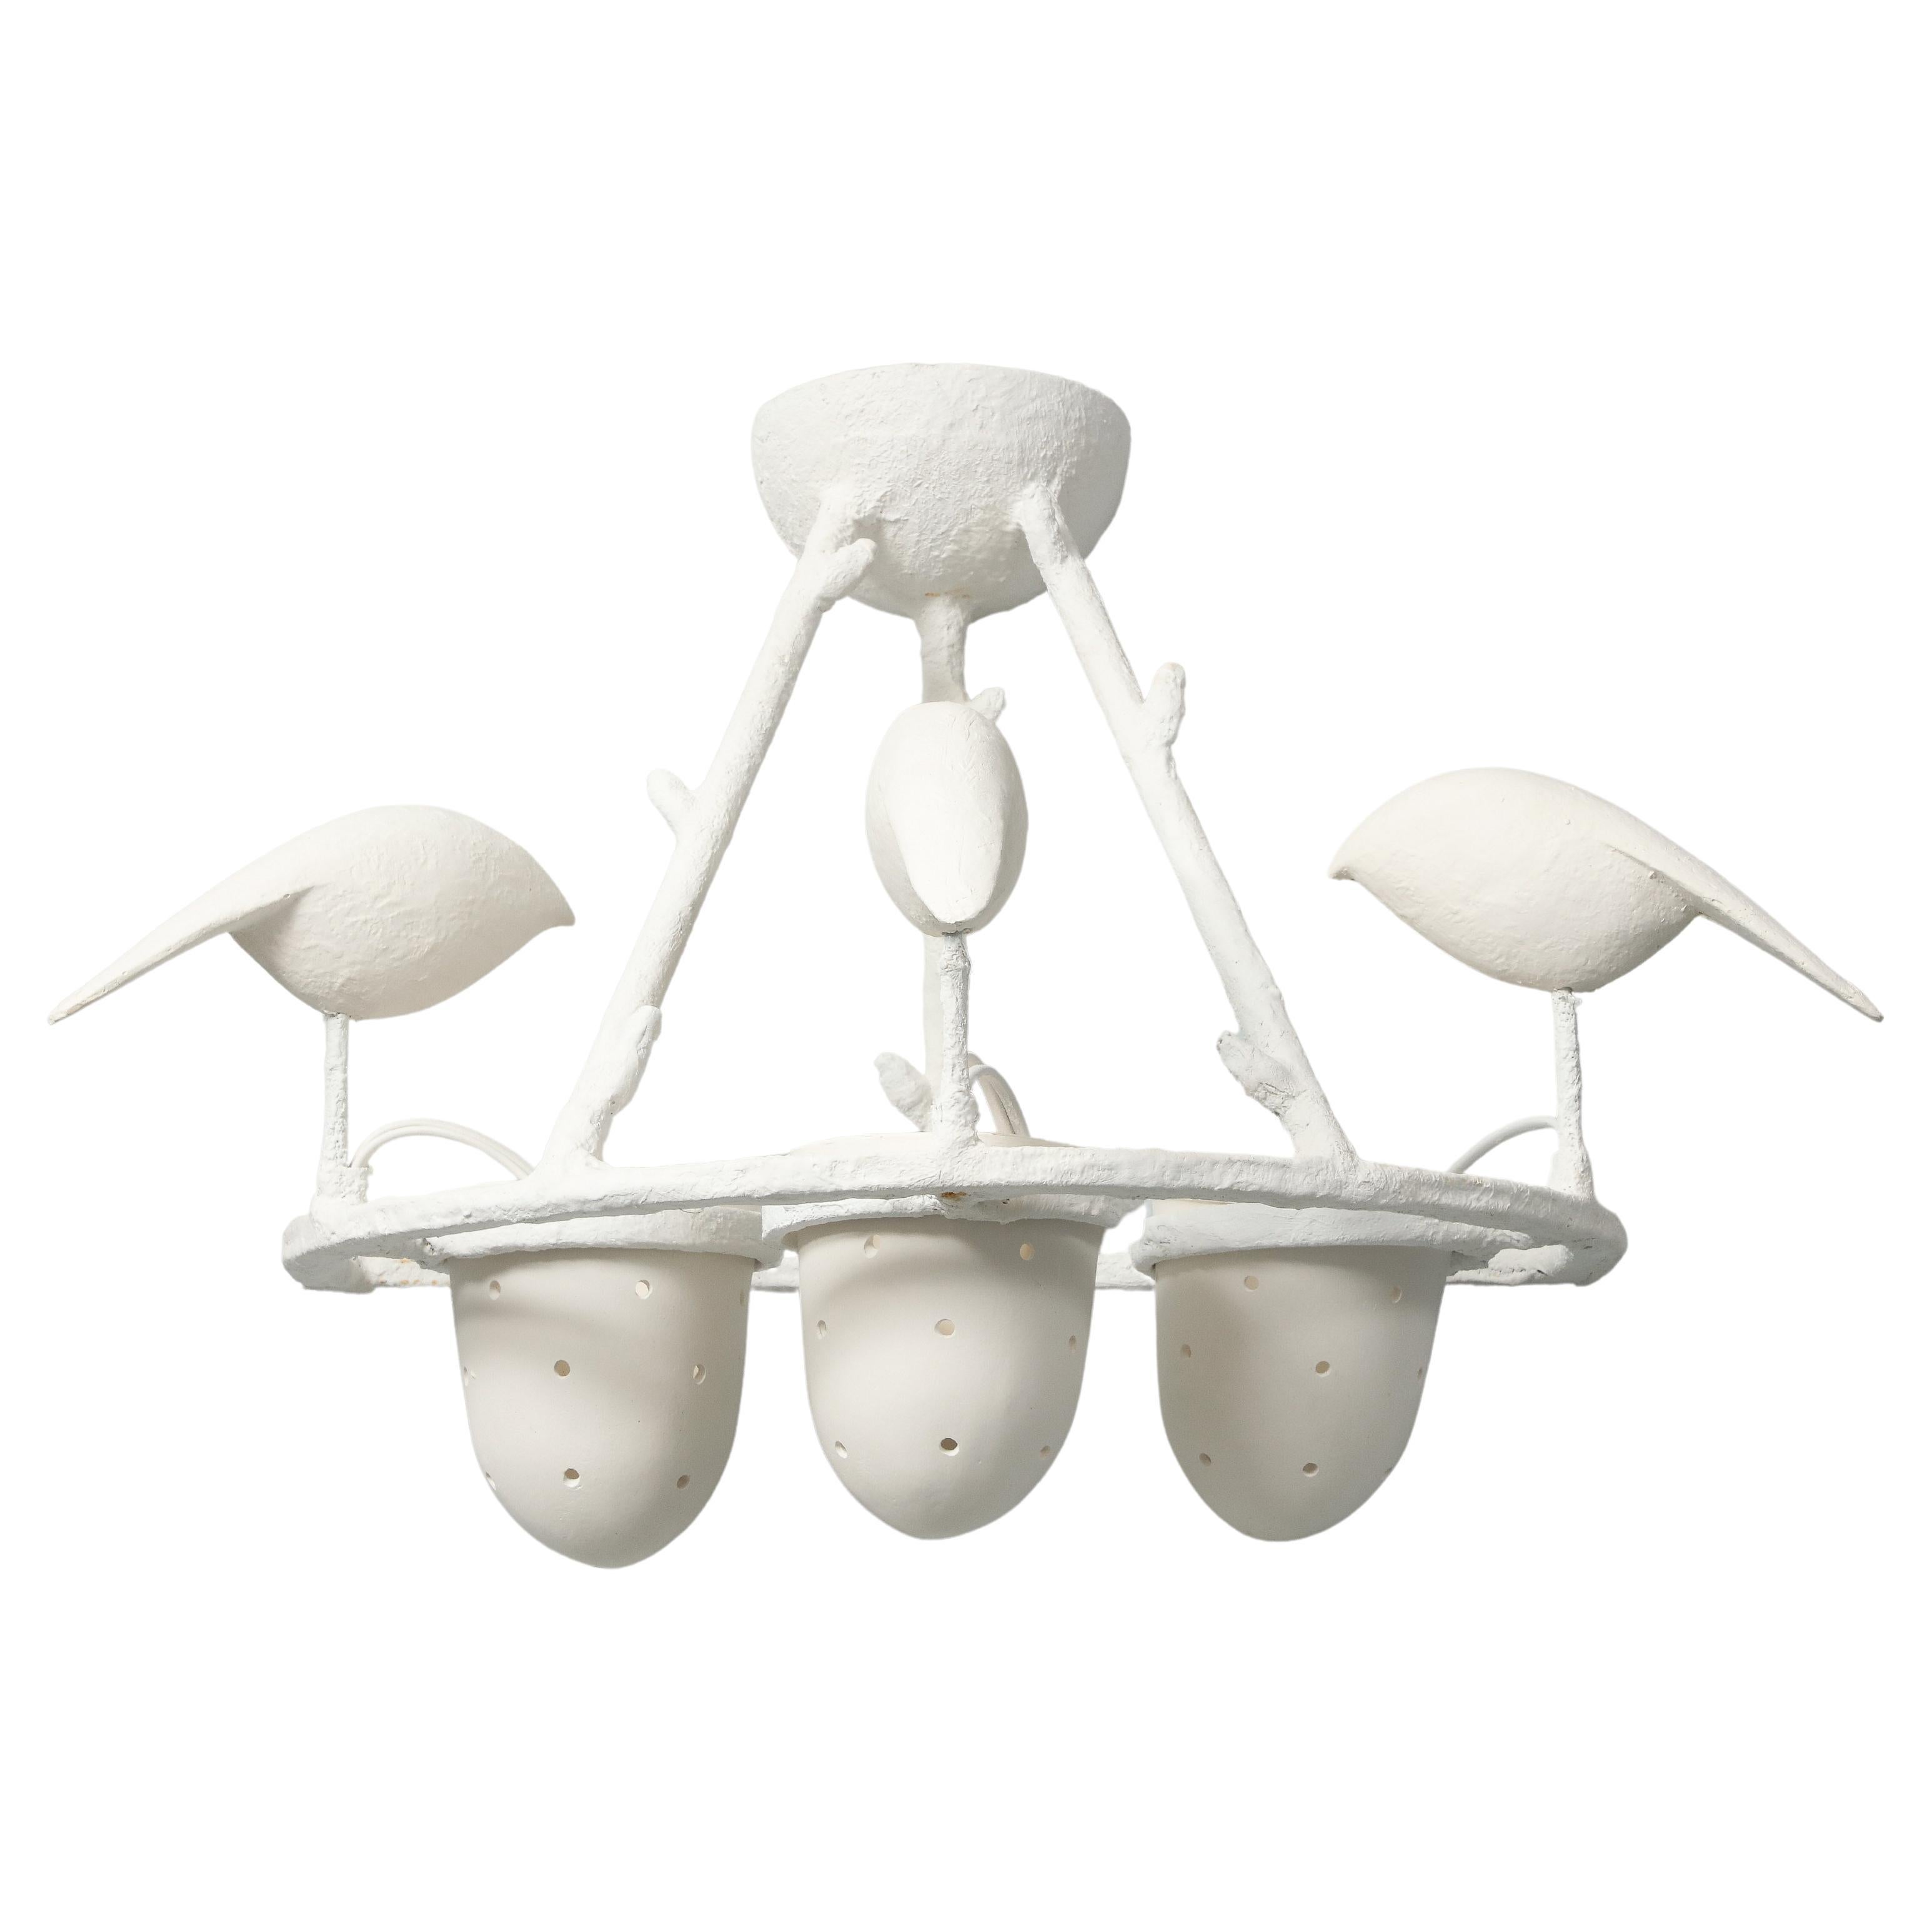 Diese vier von Jacques Darbaud entworfenen Wandleuchter setzen die Tradition der  Giacomettis Flora und Fauna. Hier haben wir Vögel, die sich auf einem  Rahmen und picken in einen gelochten Porzellanbecher, der die Glühbirne aufnimmt. Die Struktur